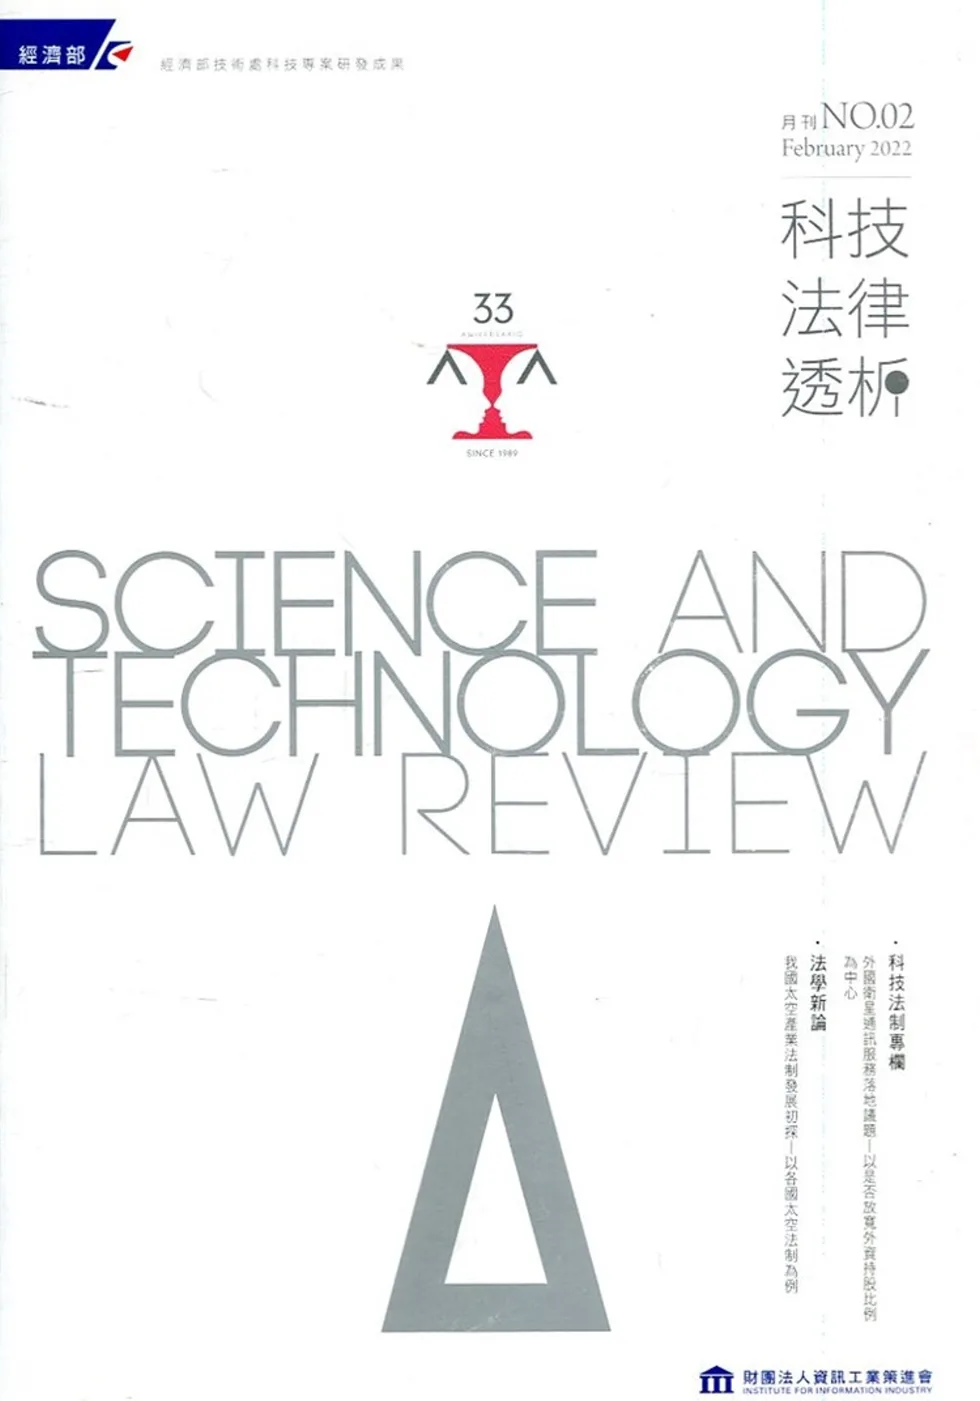 科技法律透析月刊第34卷第02期